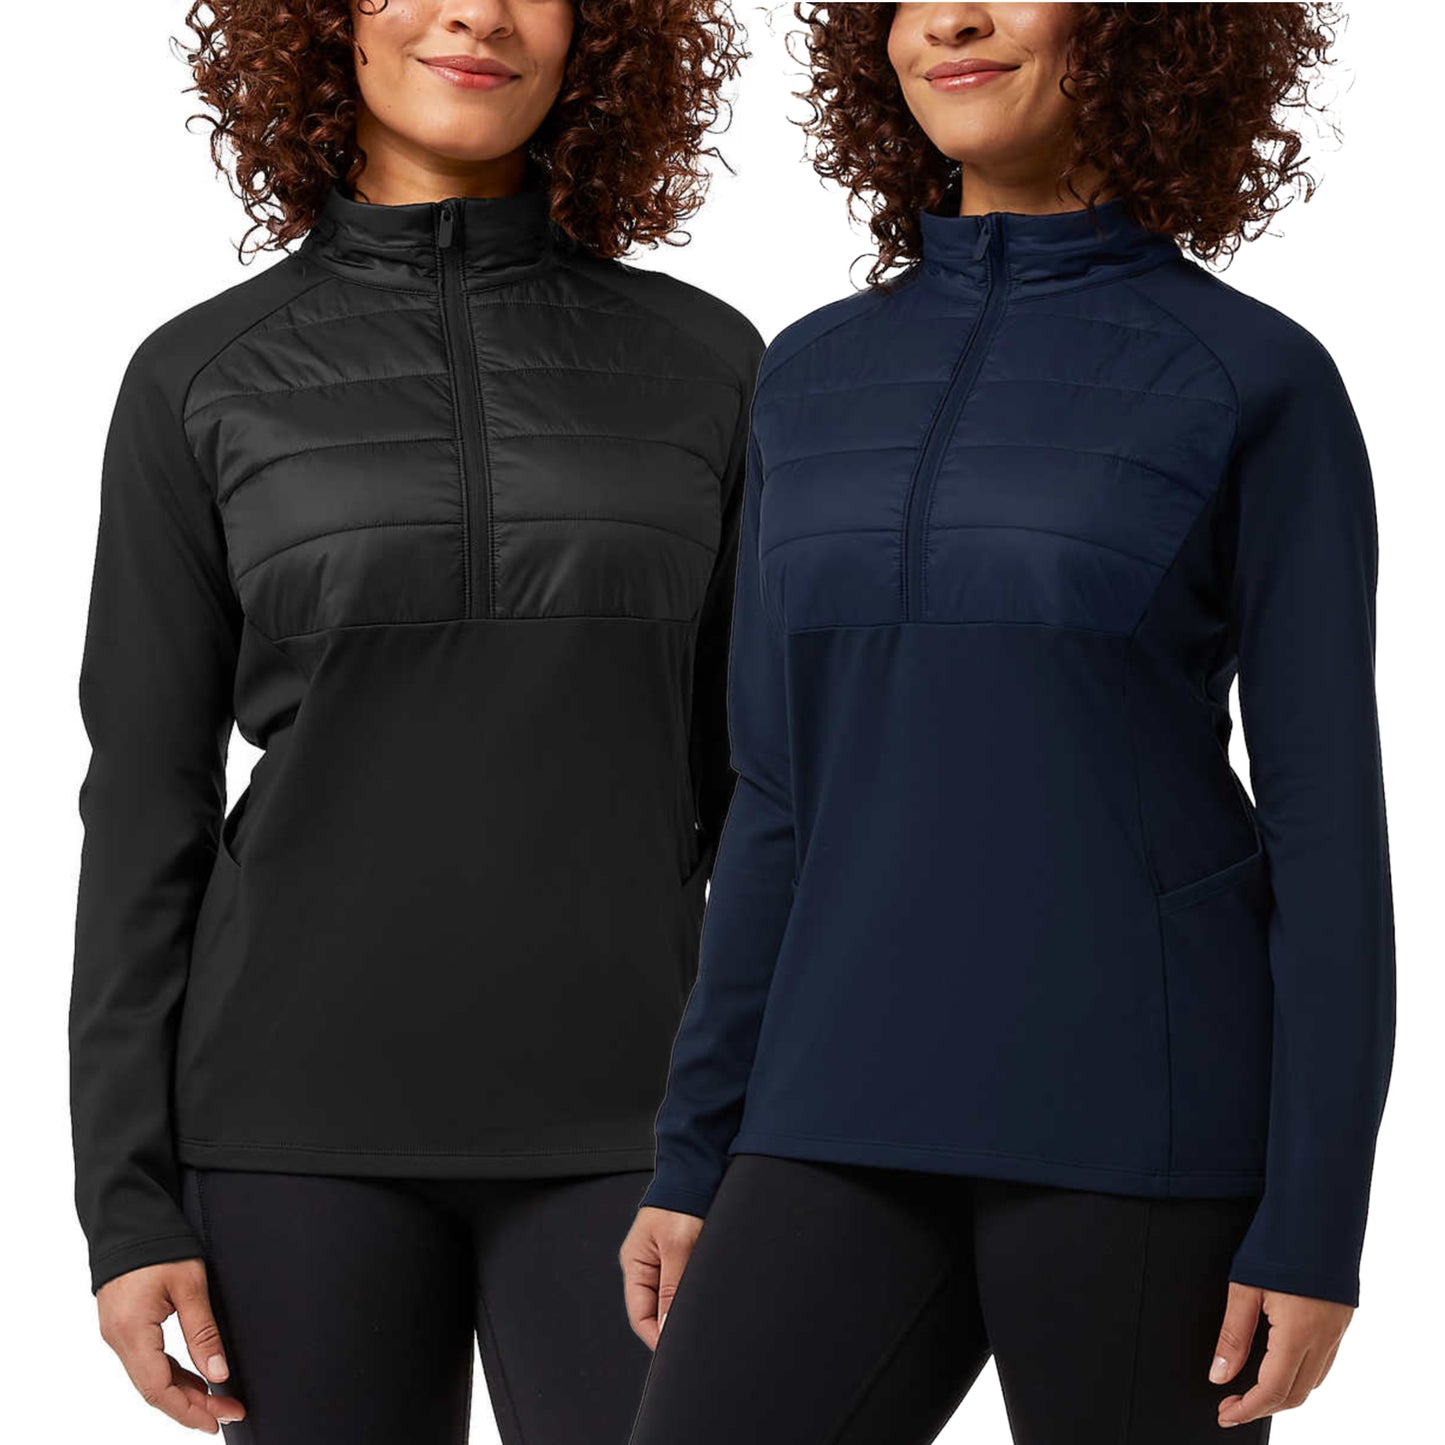 32 Degrees Women's Half Zip Fleece Lined Stretch Comfort Sweatshirt Active Top